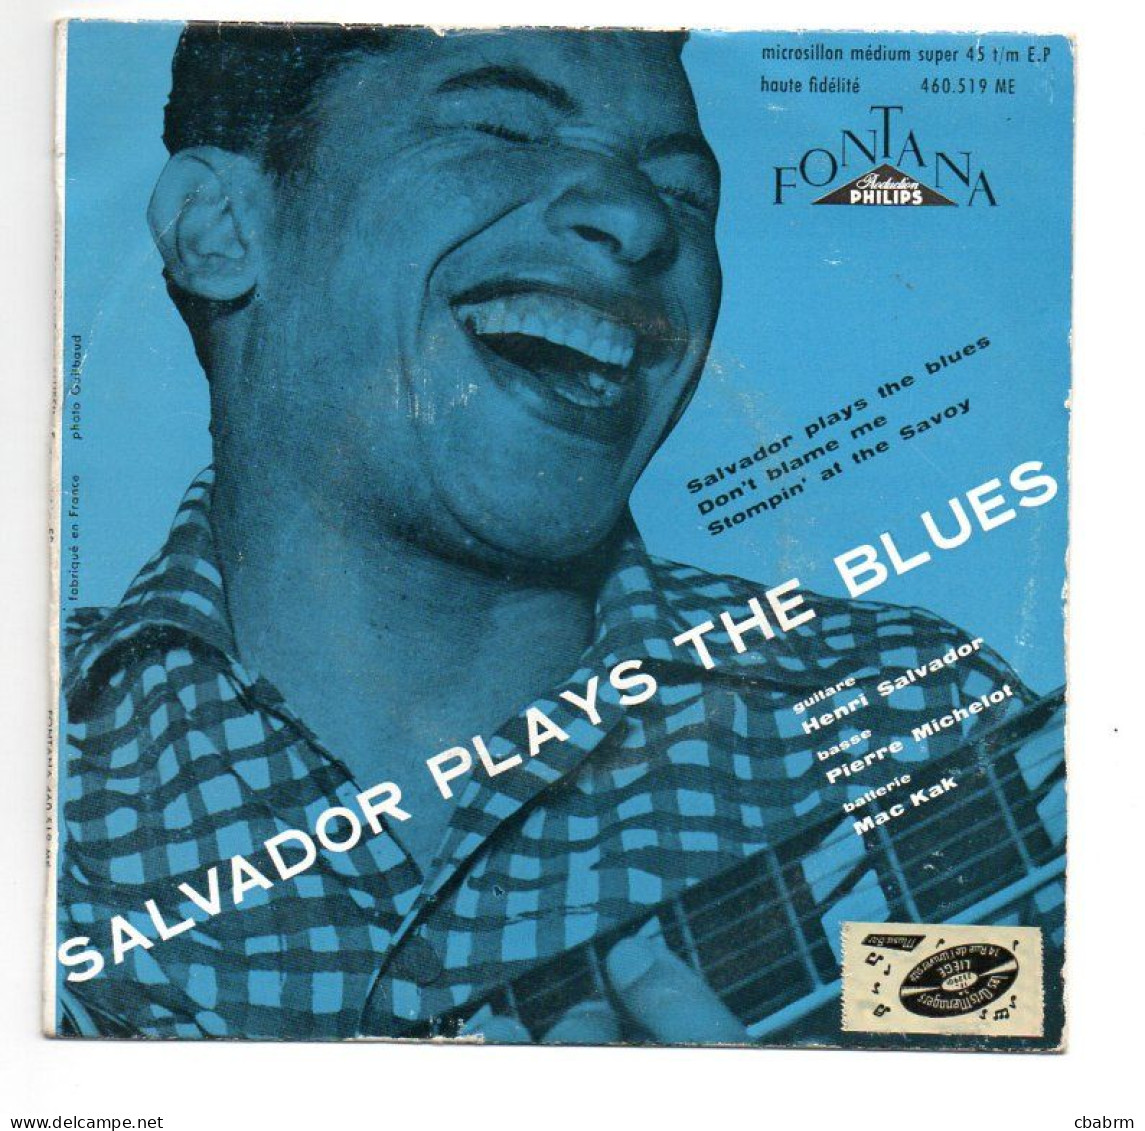 EP 45 TOURS HENRI SALVADOR PLAYS THE BLUES 1956 FRANCE Fontana 460.519 ME - Otros - Canción Francesa